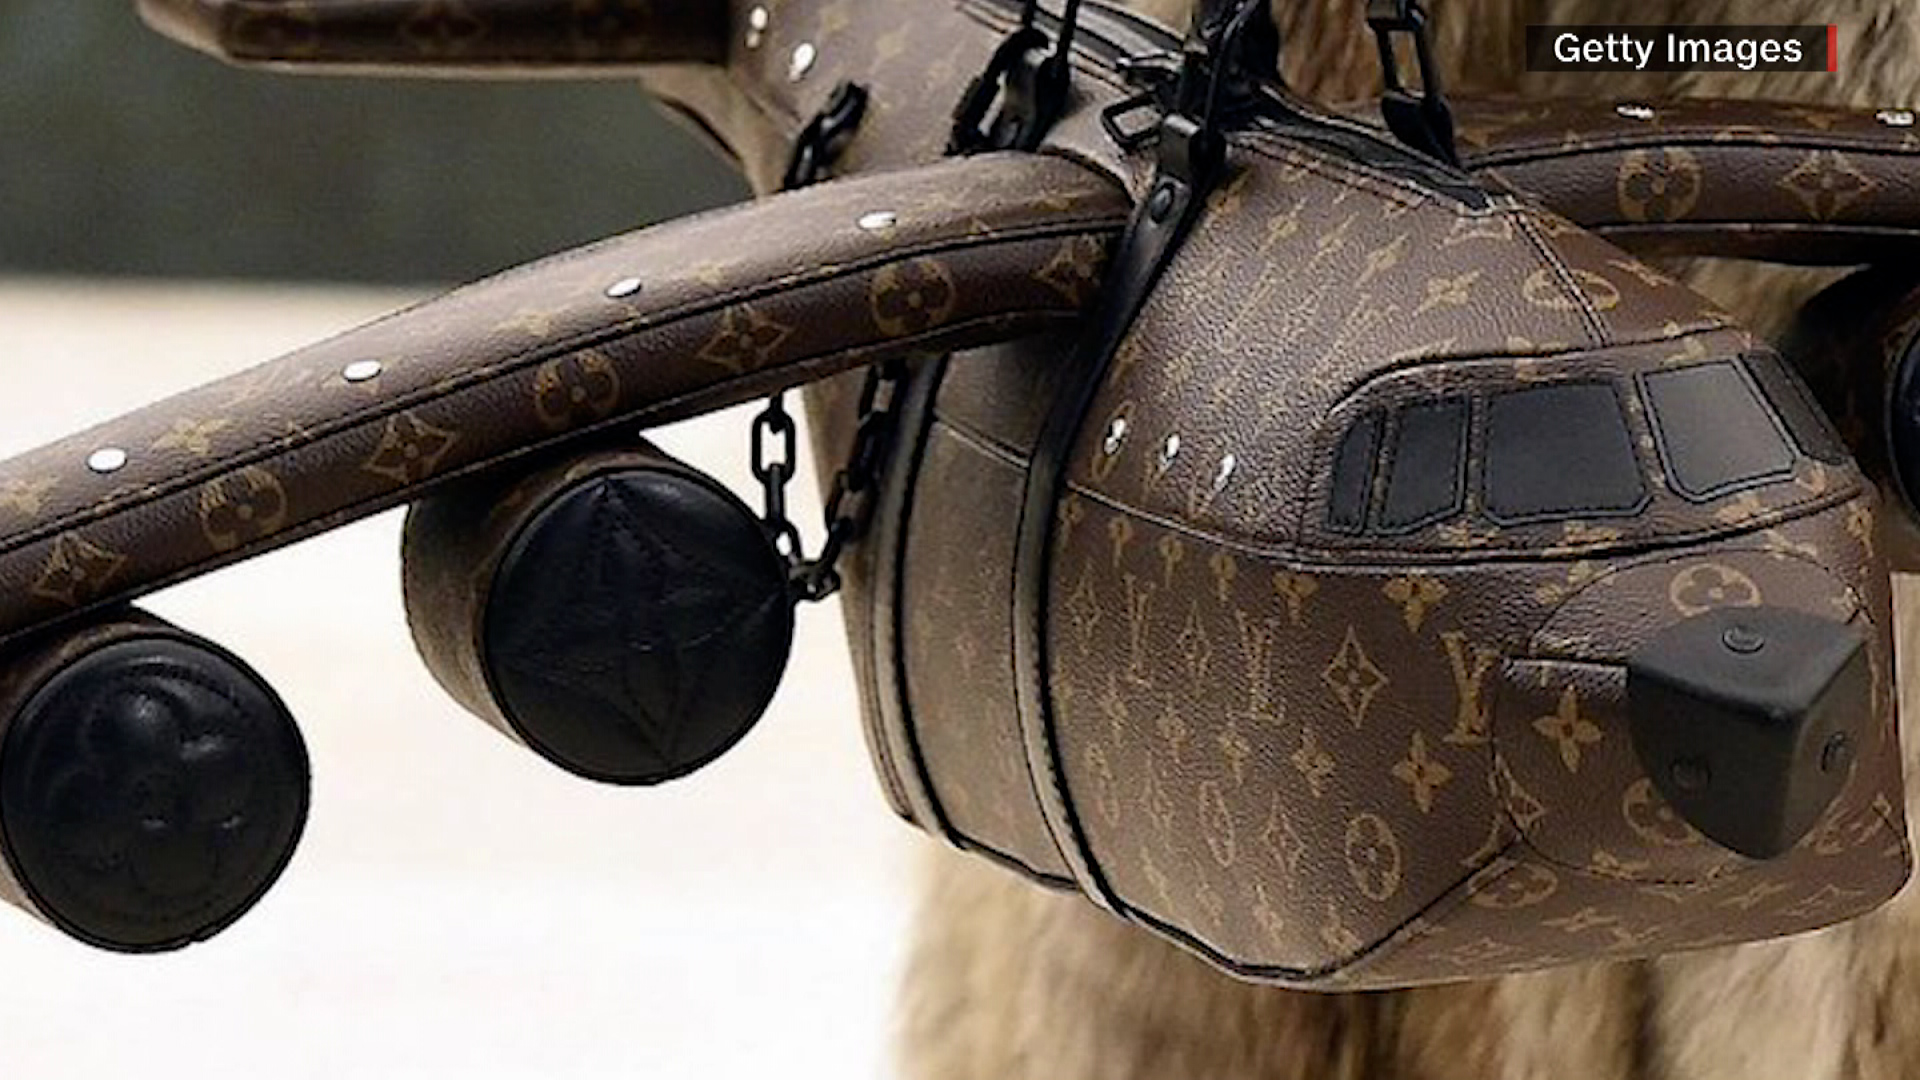 Louis Vuitton: Bolsa con forma de avión, mas cara que uno real